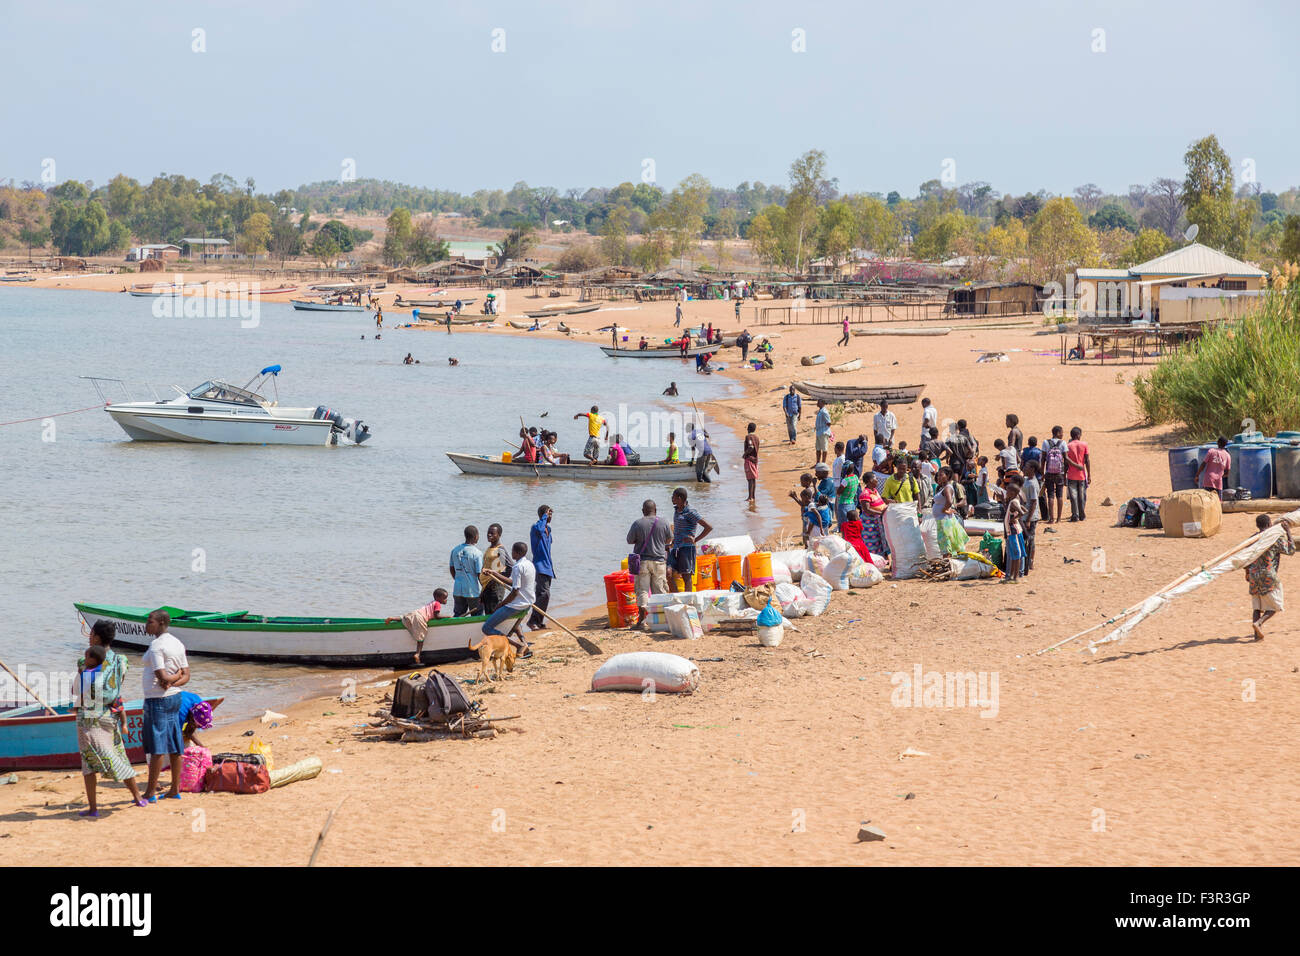 Vie du Malawi : les populations locales à Ilala Ferry Port d'attente pour la traversée vers le Mozambique, l'île de Likoma, le lac Malawi, Malawi, Afrique du sud-est Banque D'Images